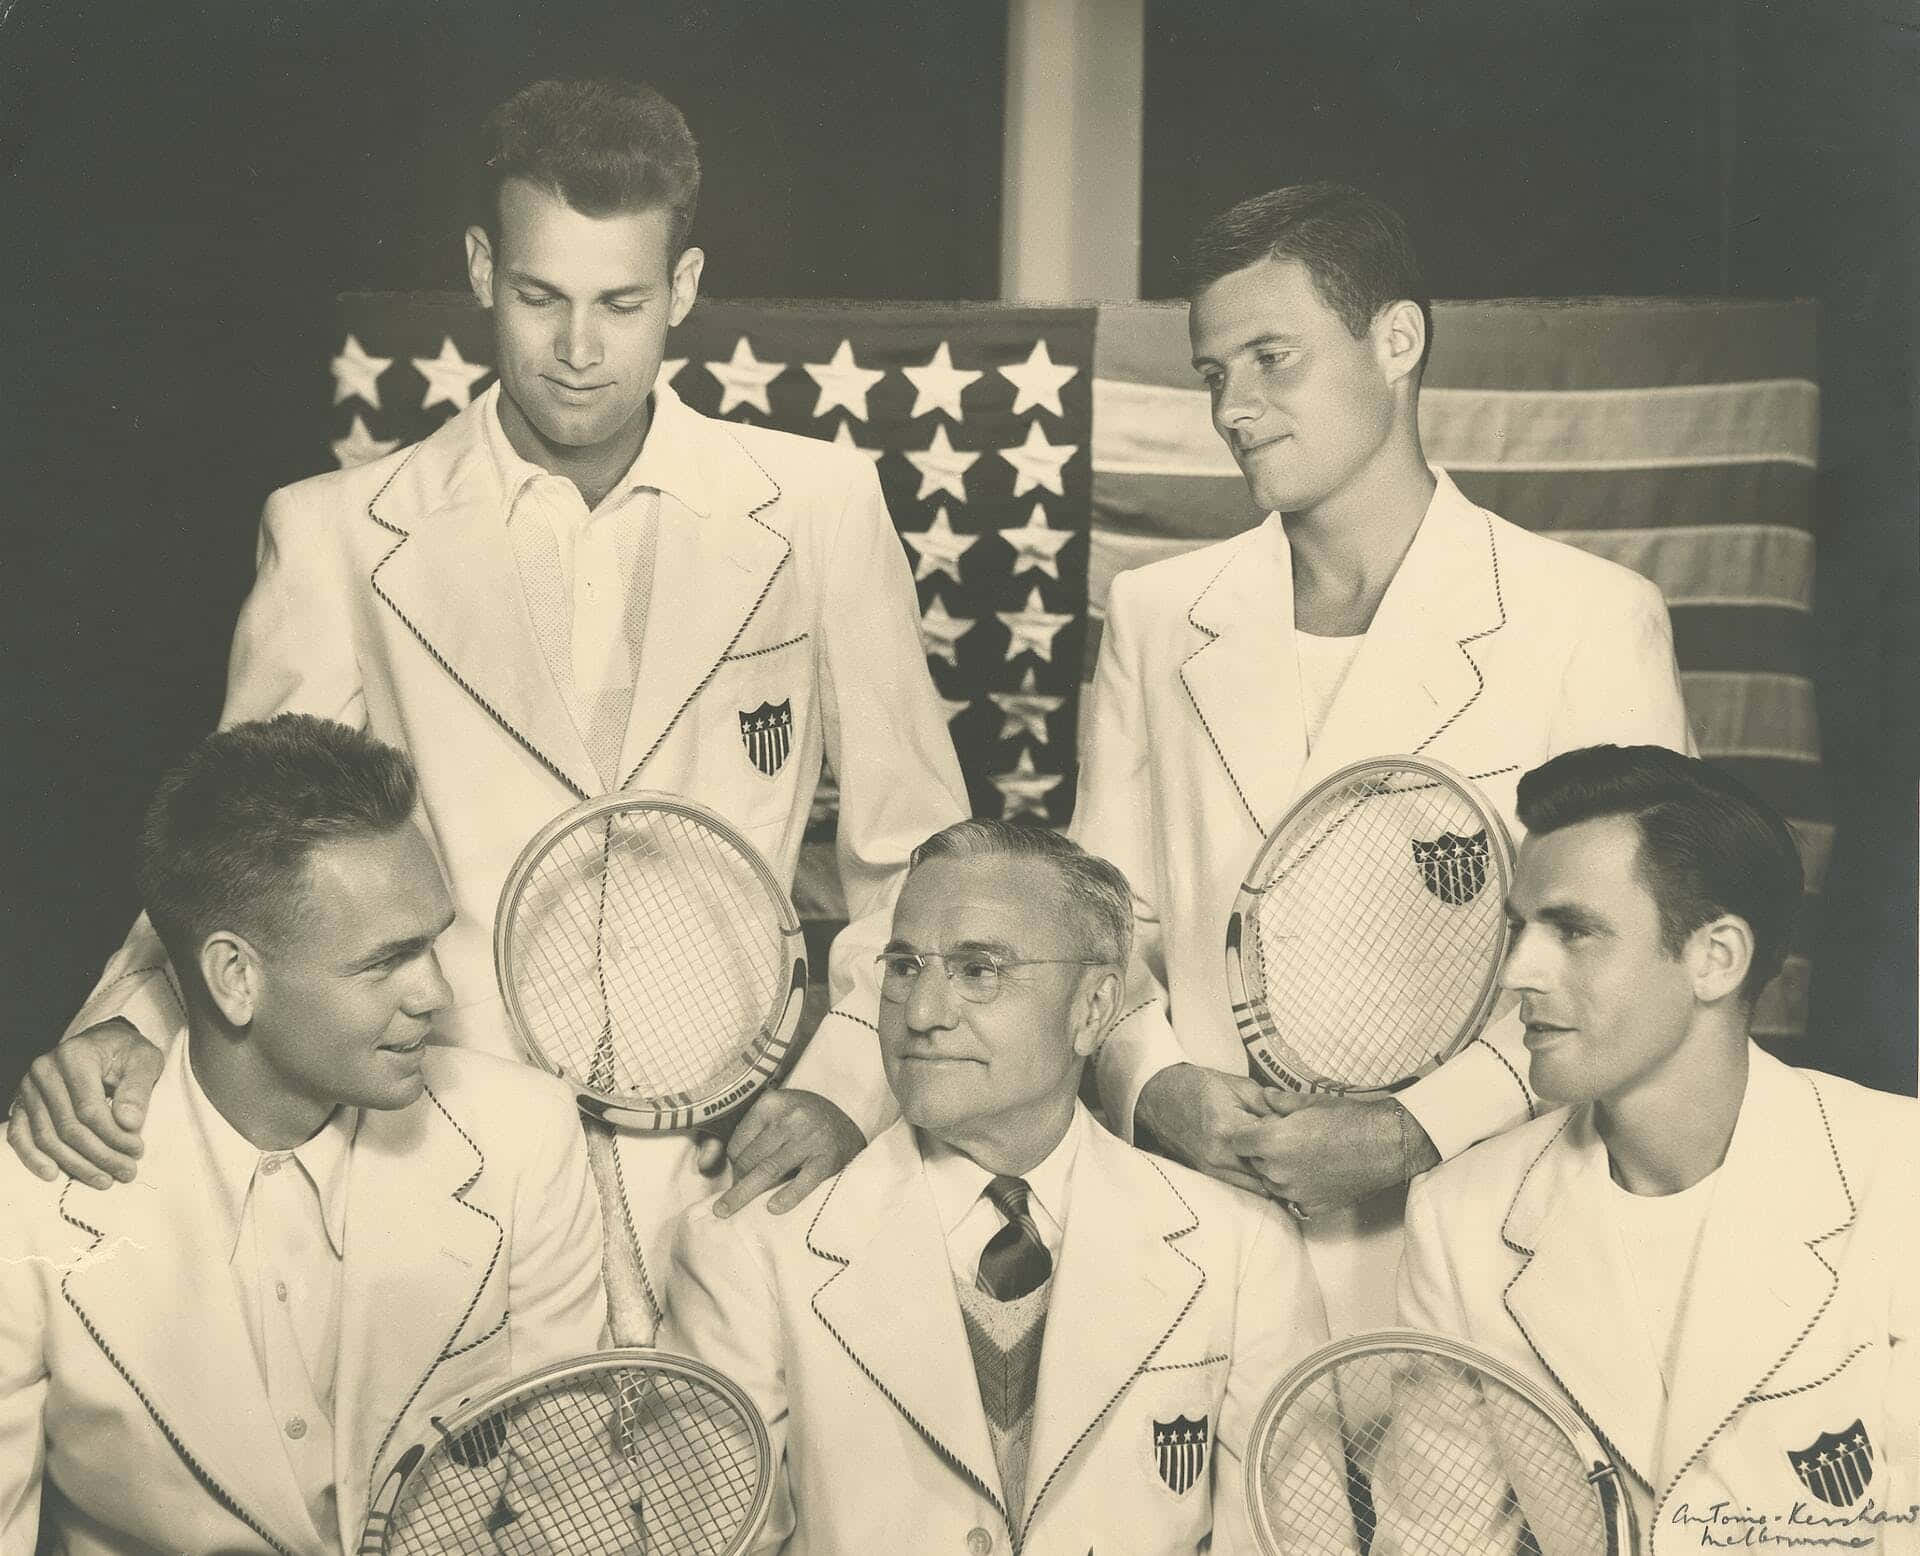 1924: Tag baggrunden med Jean Borotra og hans Davis Cup-finalister fra 1924. Wallpaper